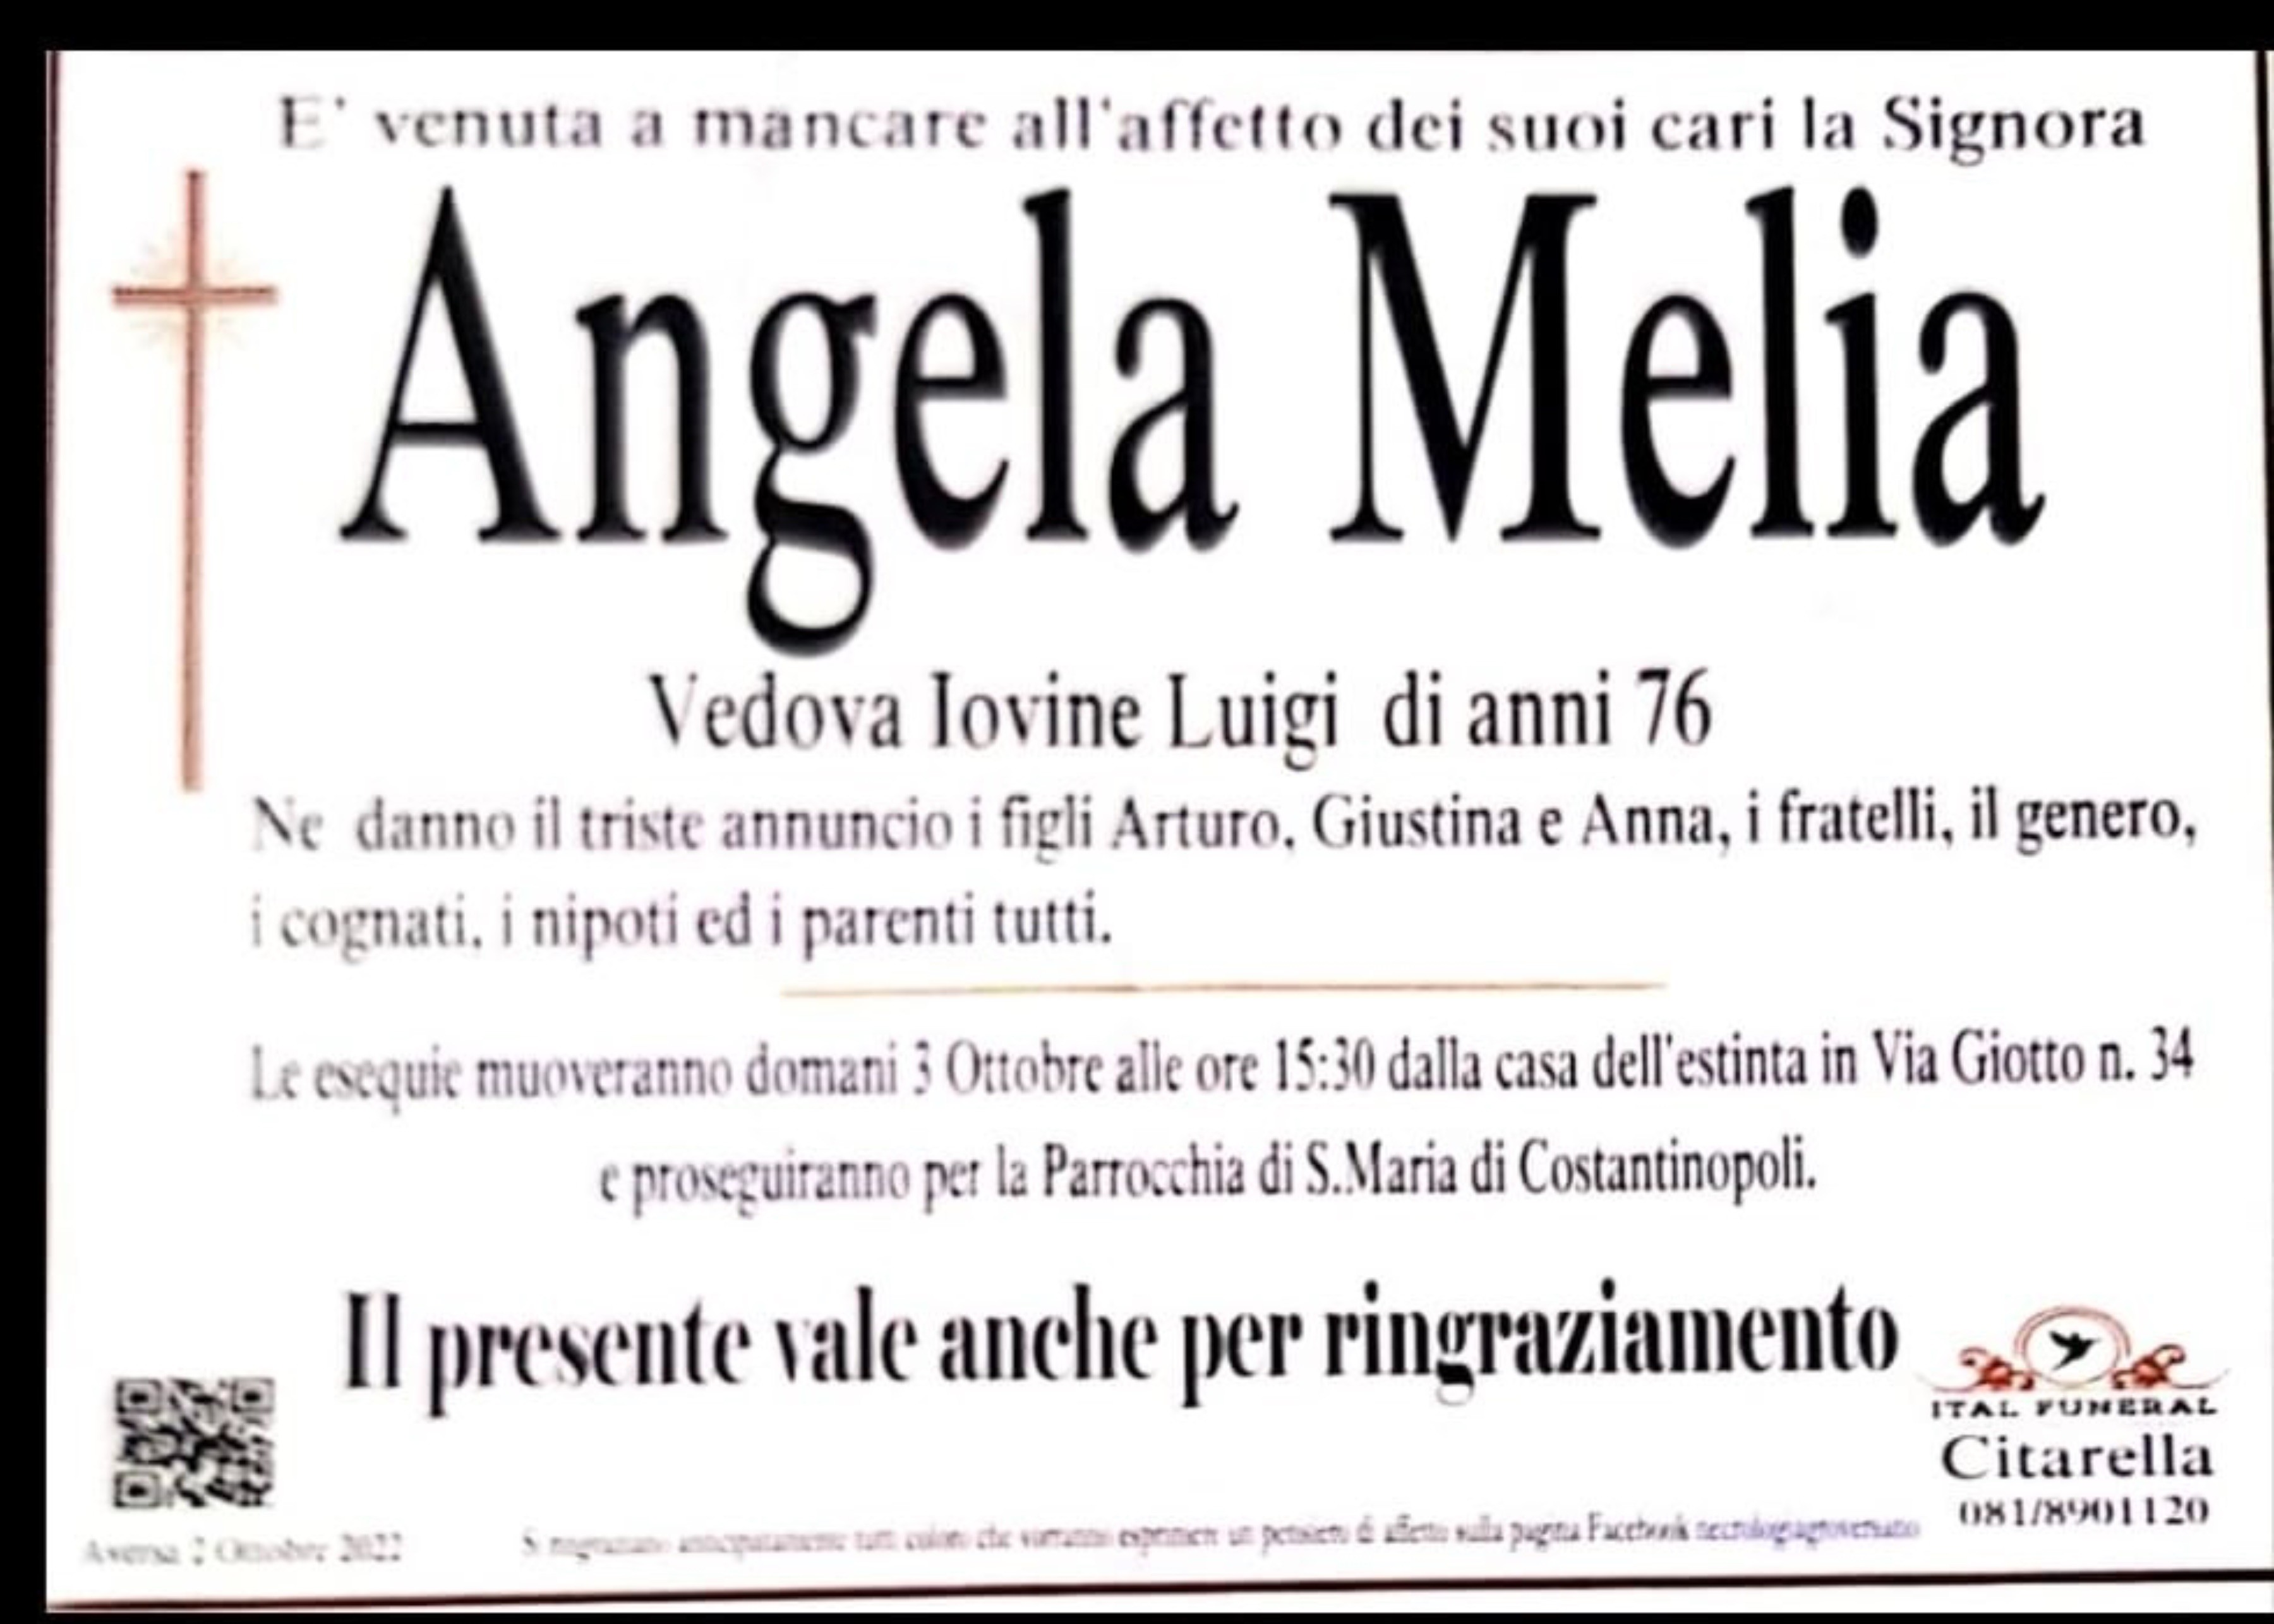 Angela Melia